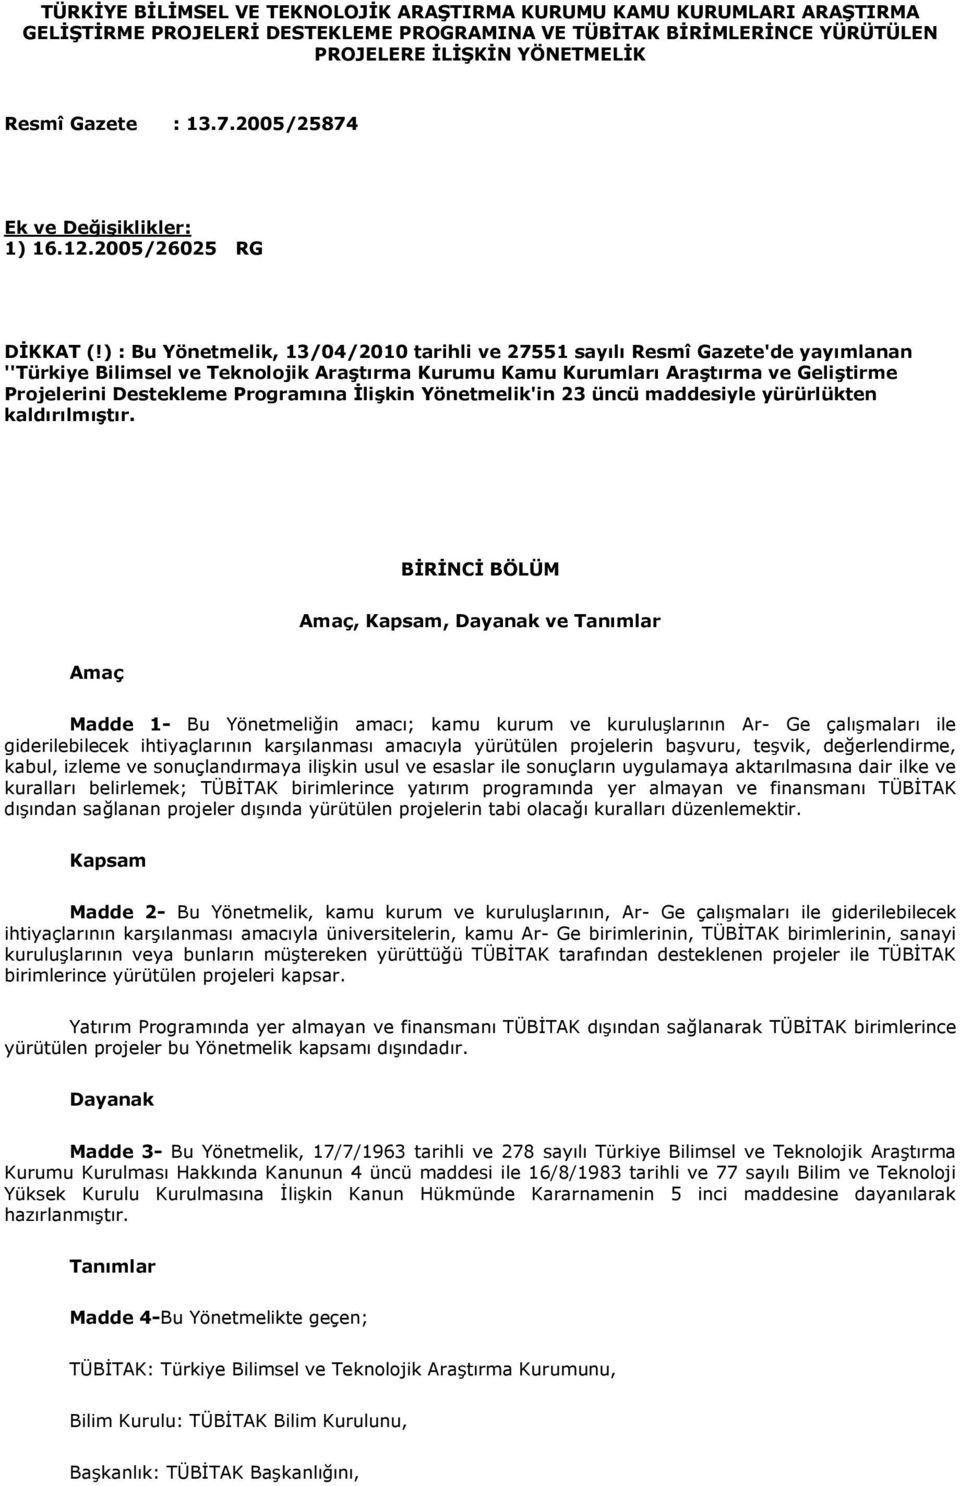 ) : Bu Yönetmelik, 13/04/2010 tarihli ve 27551 sayılı Resmî Gazete'de yayımlanan ''Türkiye Bilimsel ve Teknolojik Araştırma Kurumu Kamu Kurumları Araştırma ve Geliştirme Projelerini Destekleme